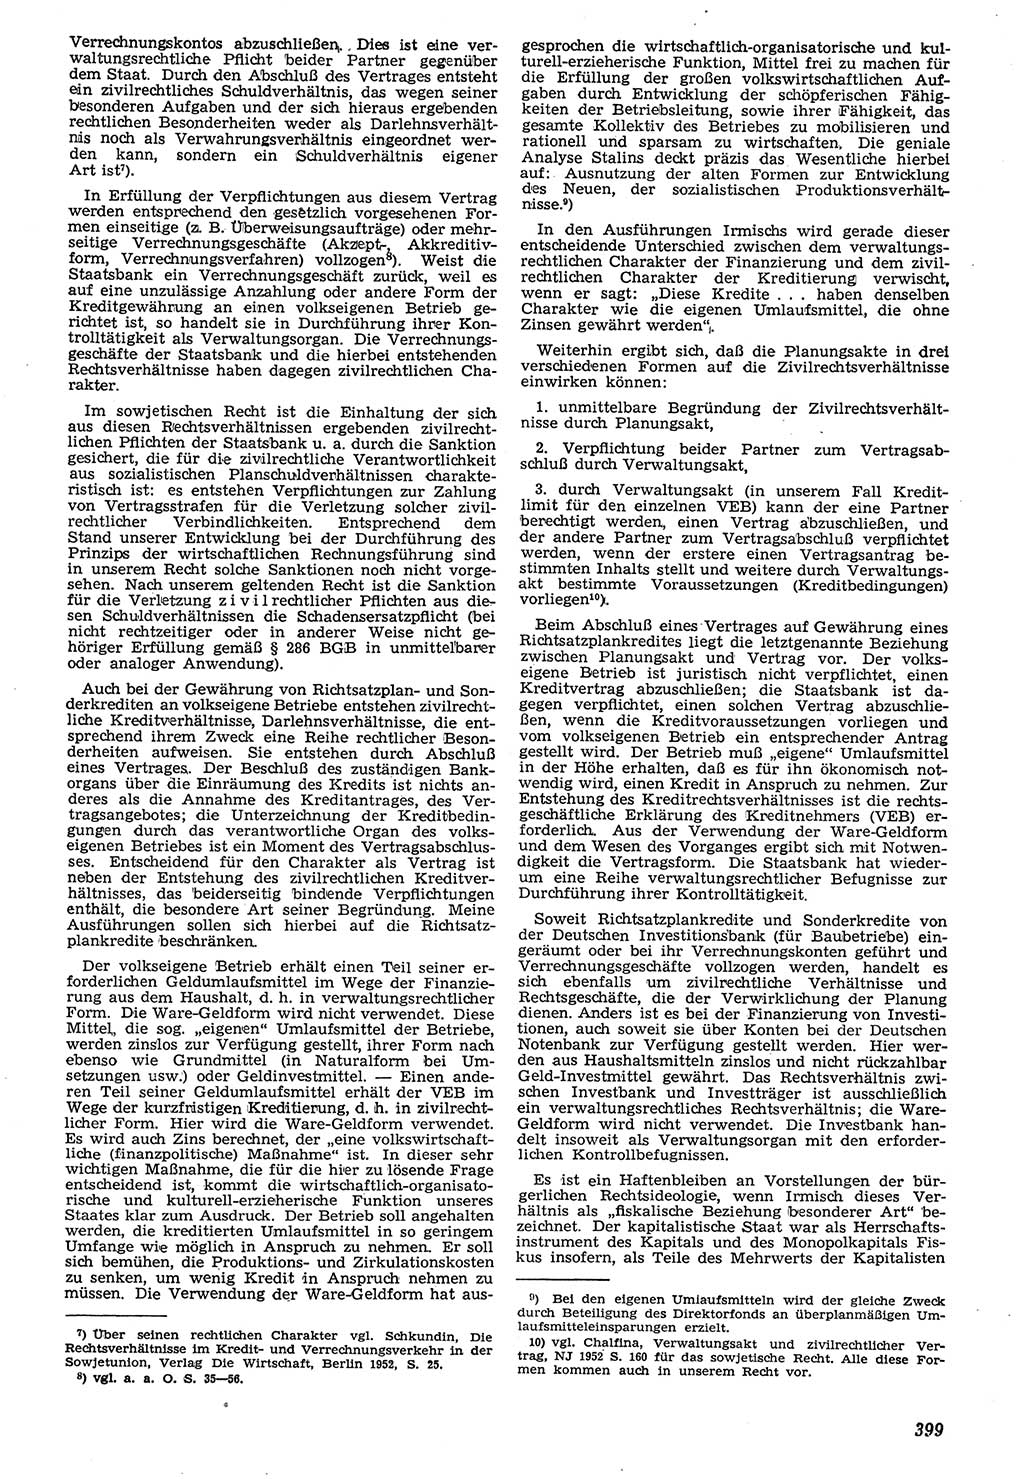 Neue Justiz (NJ), Zeitschrift für Recht und Rechtswissenschaft [Deutsche Demokratische Republik (DDR)], 7. Jahrgang 1953, Seite 399 (NJ DDR 1953, S. 399)